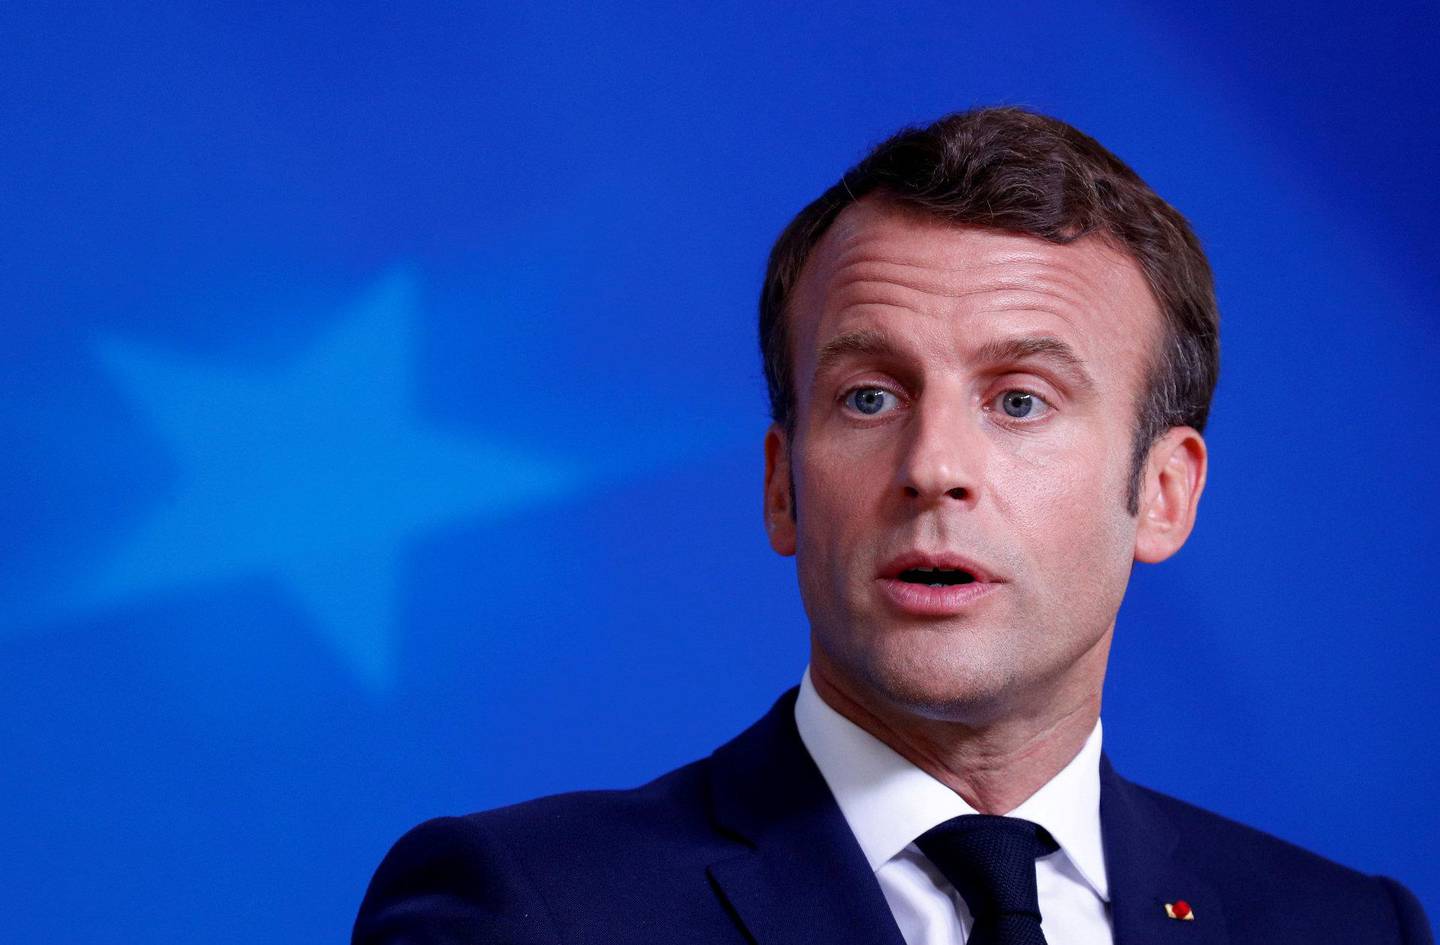 AVLYST: President Macron og regjeringen hadde en konkret plan ferdig med å hente ut alle franskmenn i Syria og kurdiske områder. Men så ble det avlyst – visstnok av redsel for opinionen. FOTO: NTB SCANPIX